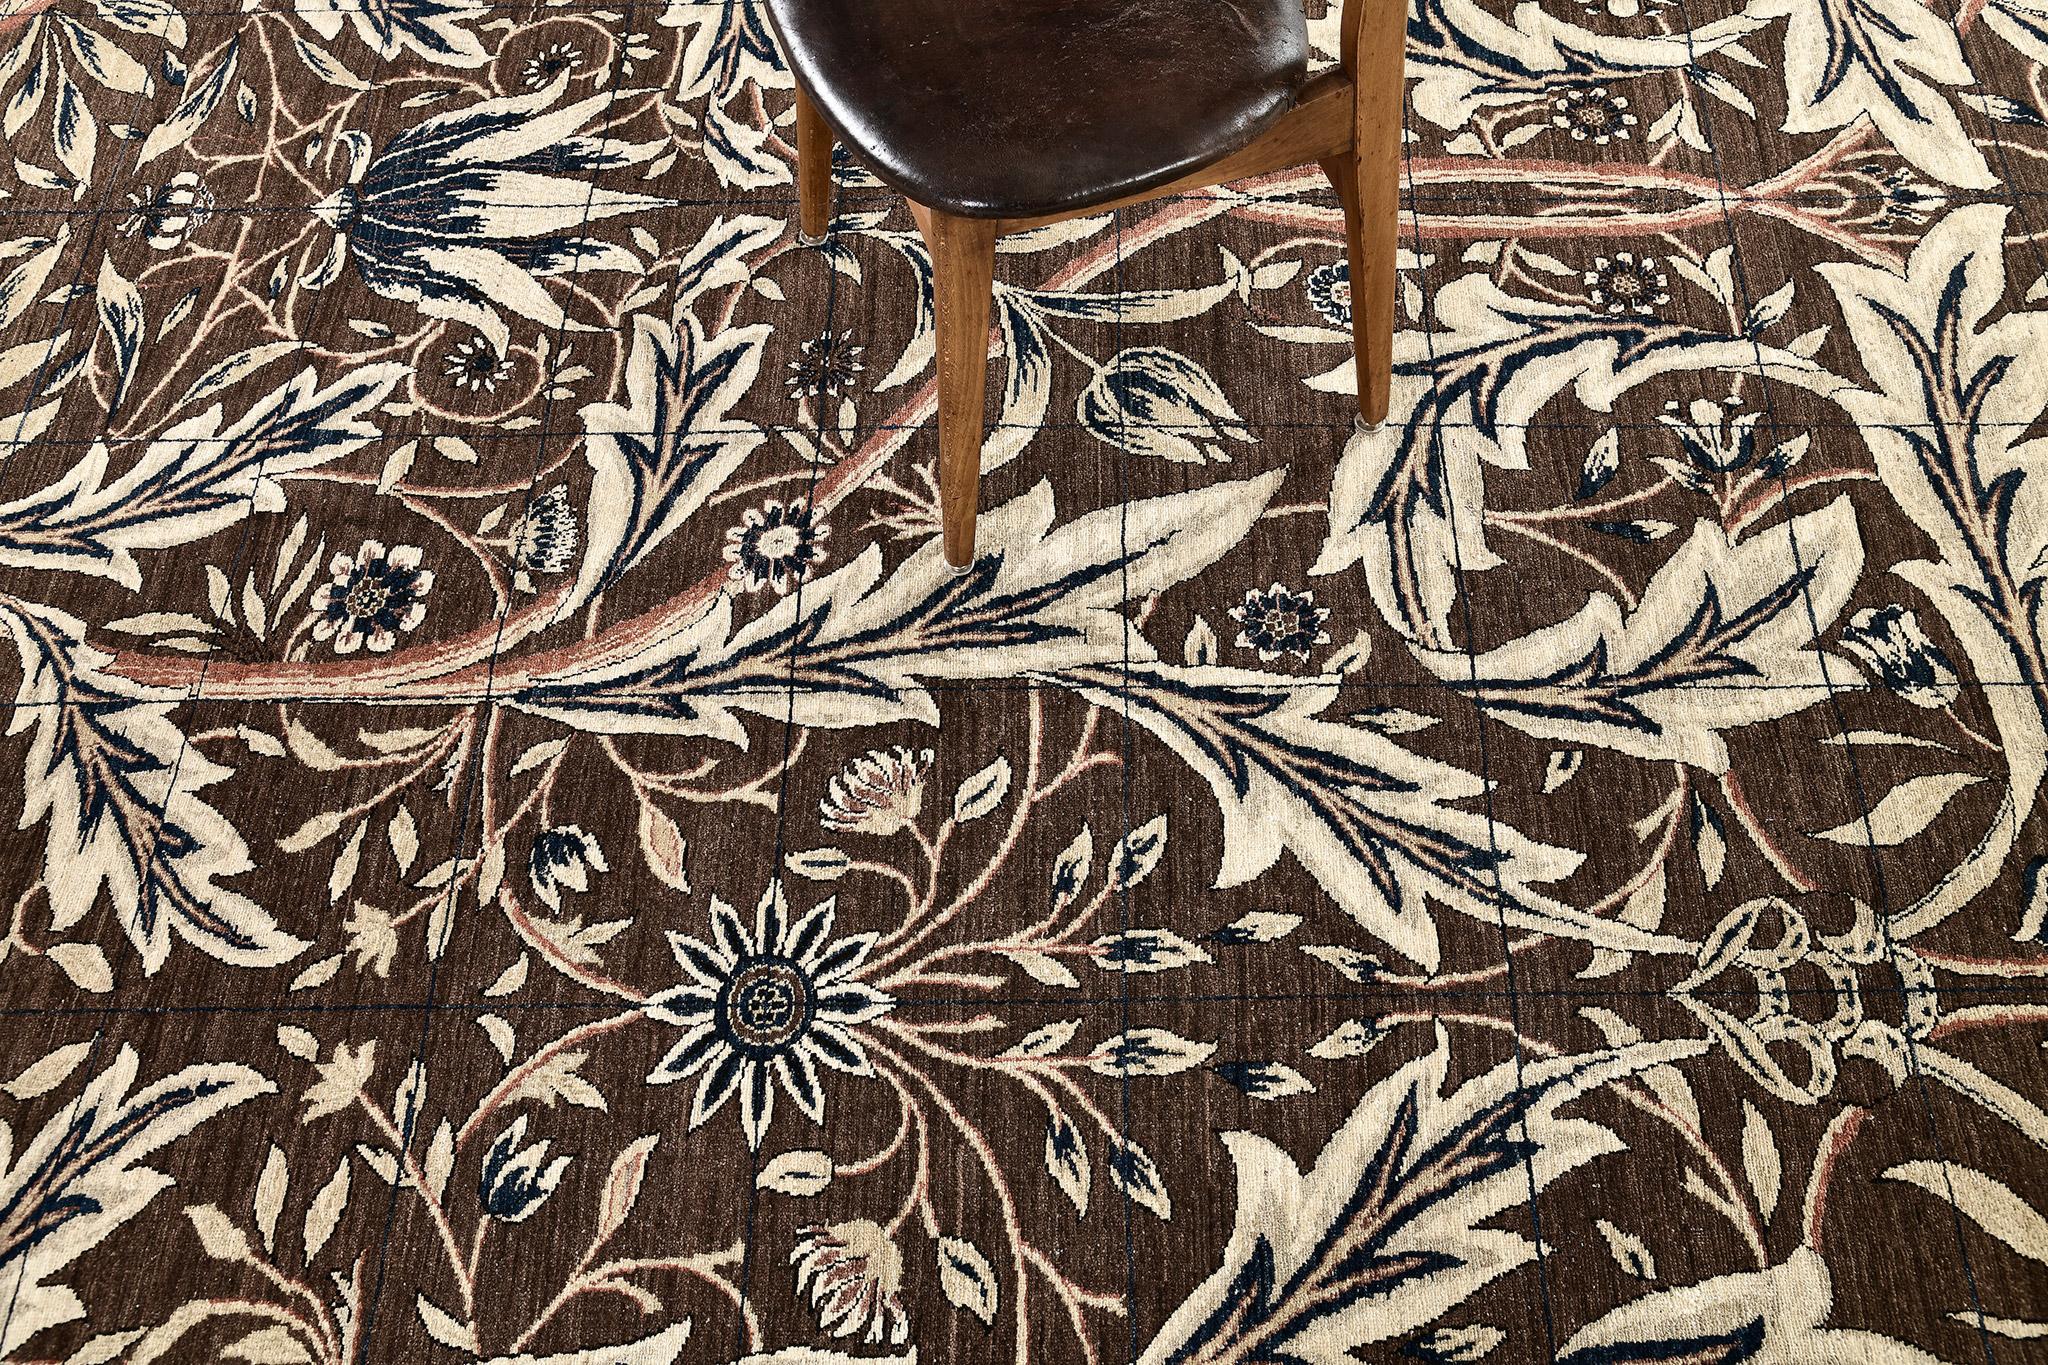 Ein prächtiger William-Morris-Designteppich, der sich durch seine naturalistischen Formen und kräftigen Farben auszeichnet. Ein sich wiederholendes, von der Natur inspiriertes Allover-Blattmuster aus dicht verschlungenen Akanthusblättern breitet